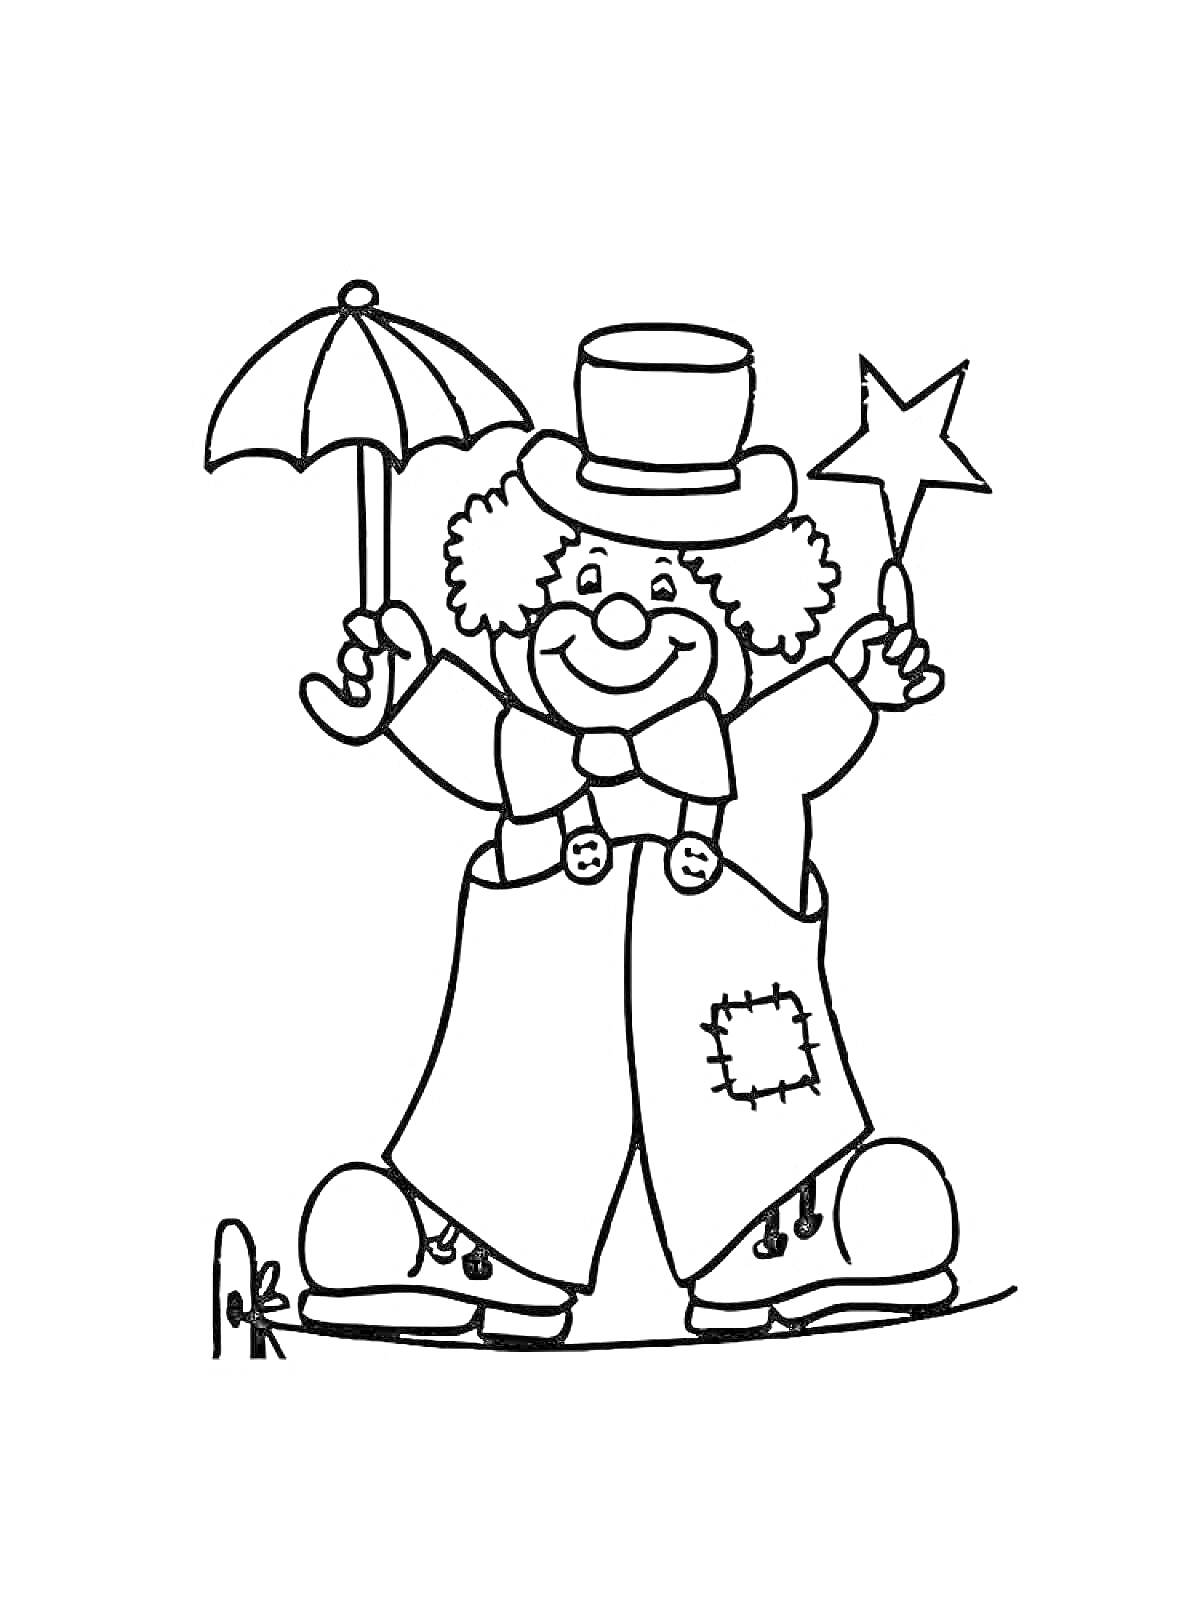 Клоун с зонтиком и звездой, в шляпе и галстуке-бабочке